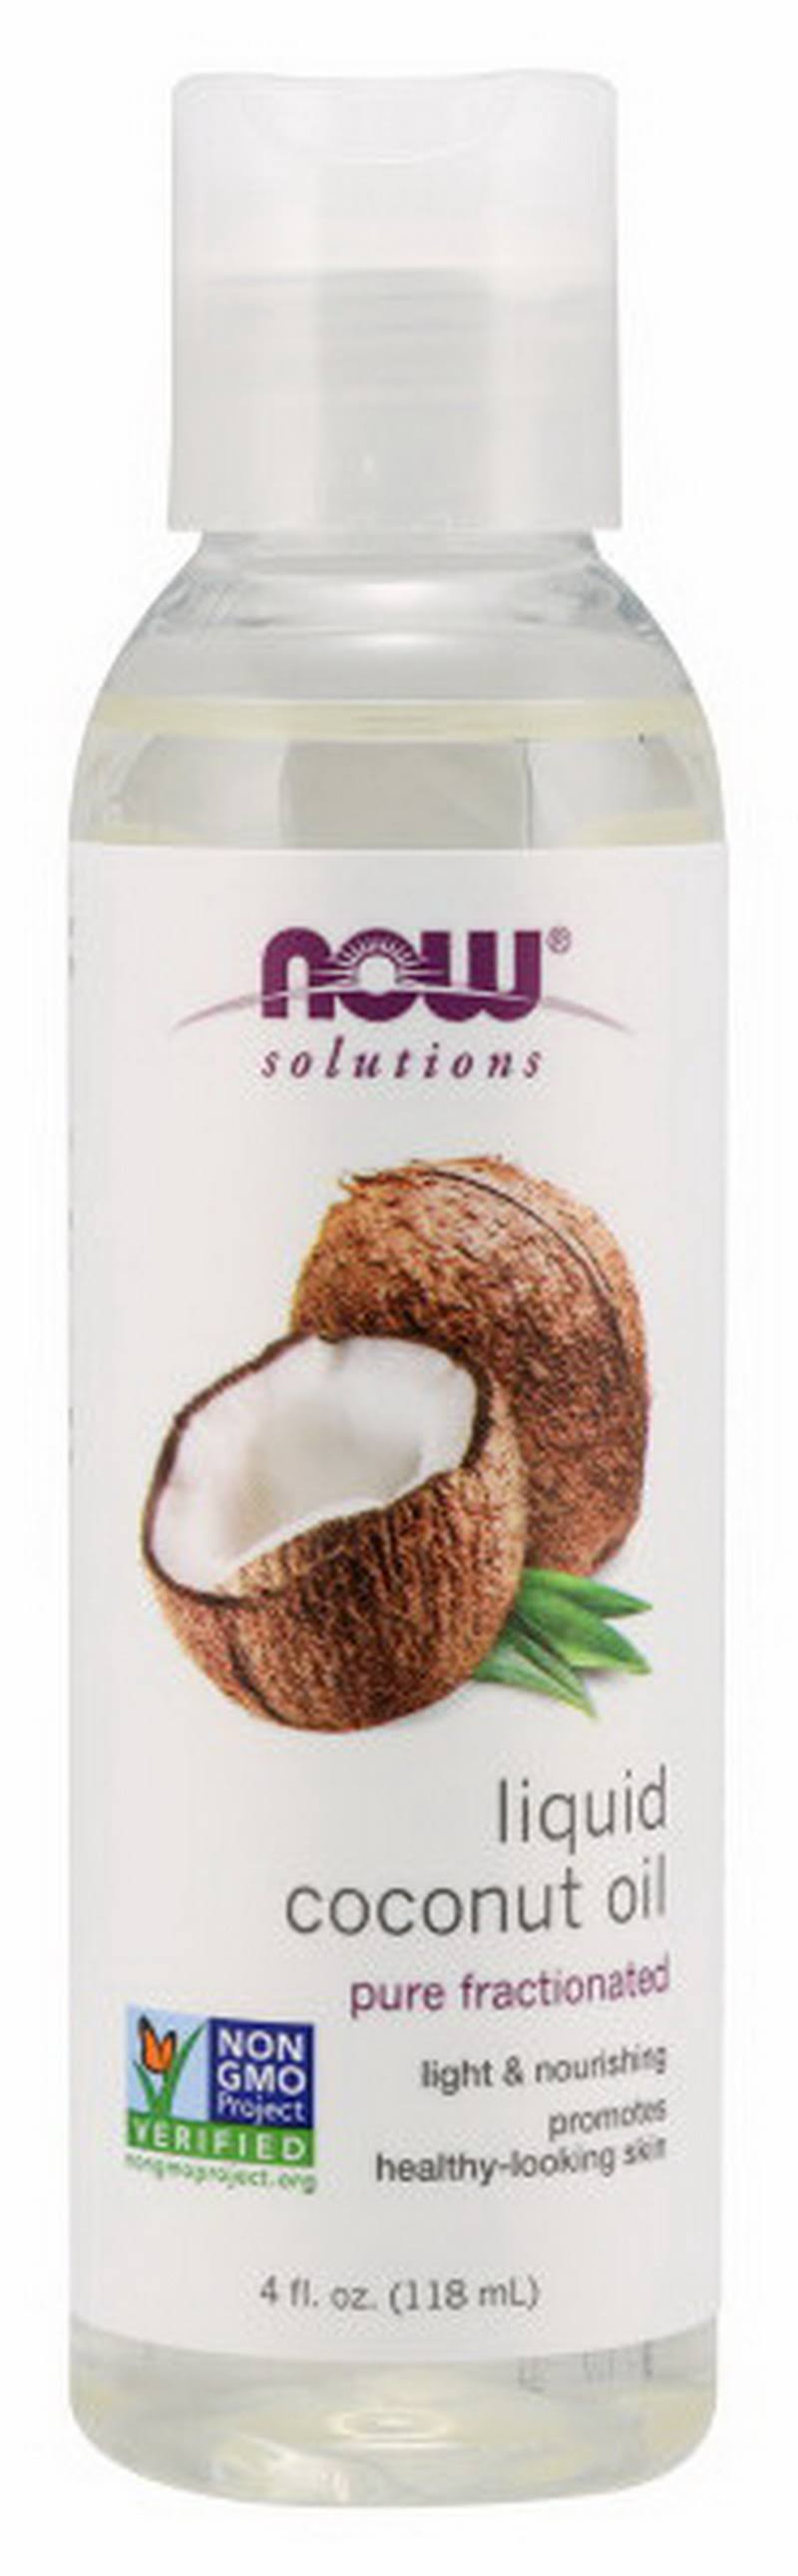 Now Liquid Coconut Oil - 4 fl oz